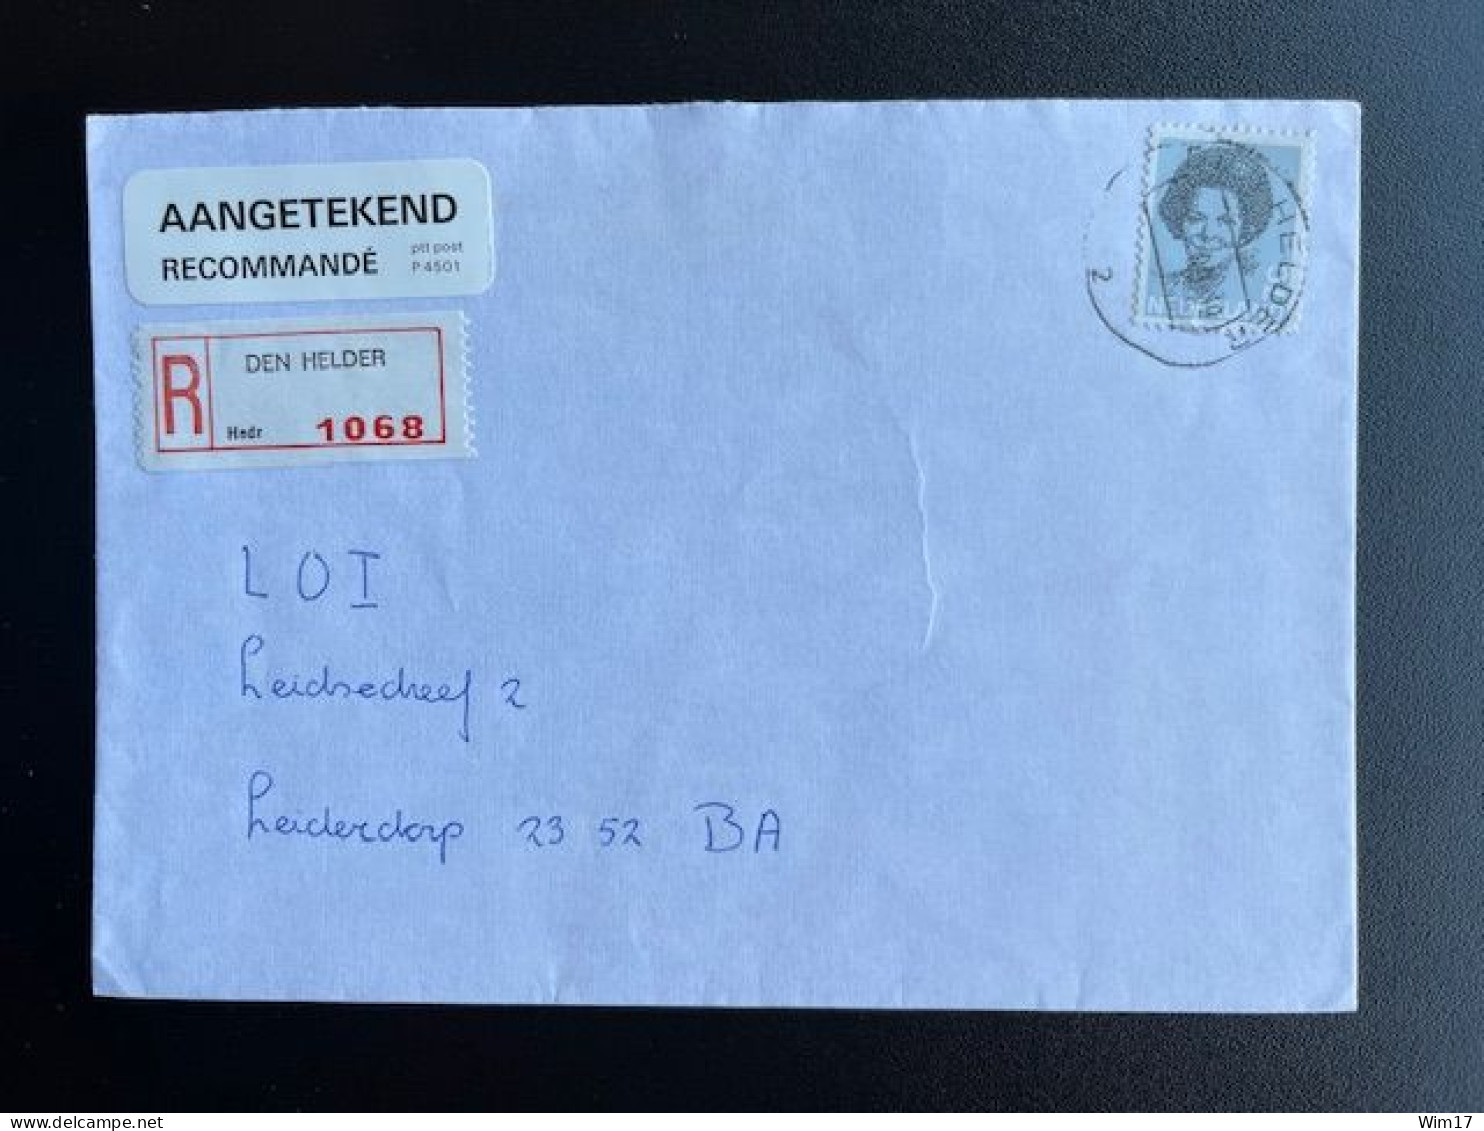 NETHERLANDS 1989 REGISTERED LETTER DEN HELDER TO LEIDERDORP NEDERLAND AANGETEKEND - Briefe U. Dokumente